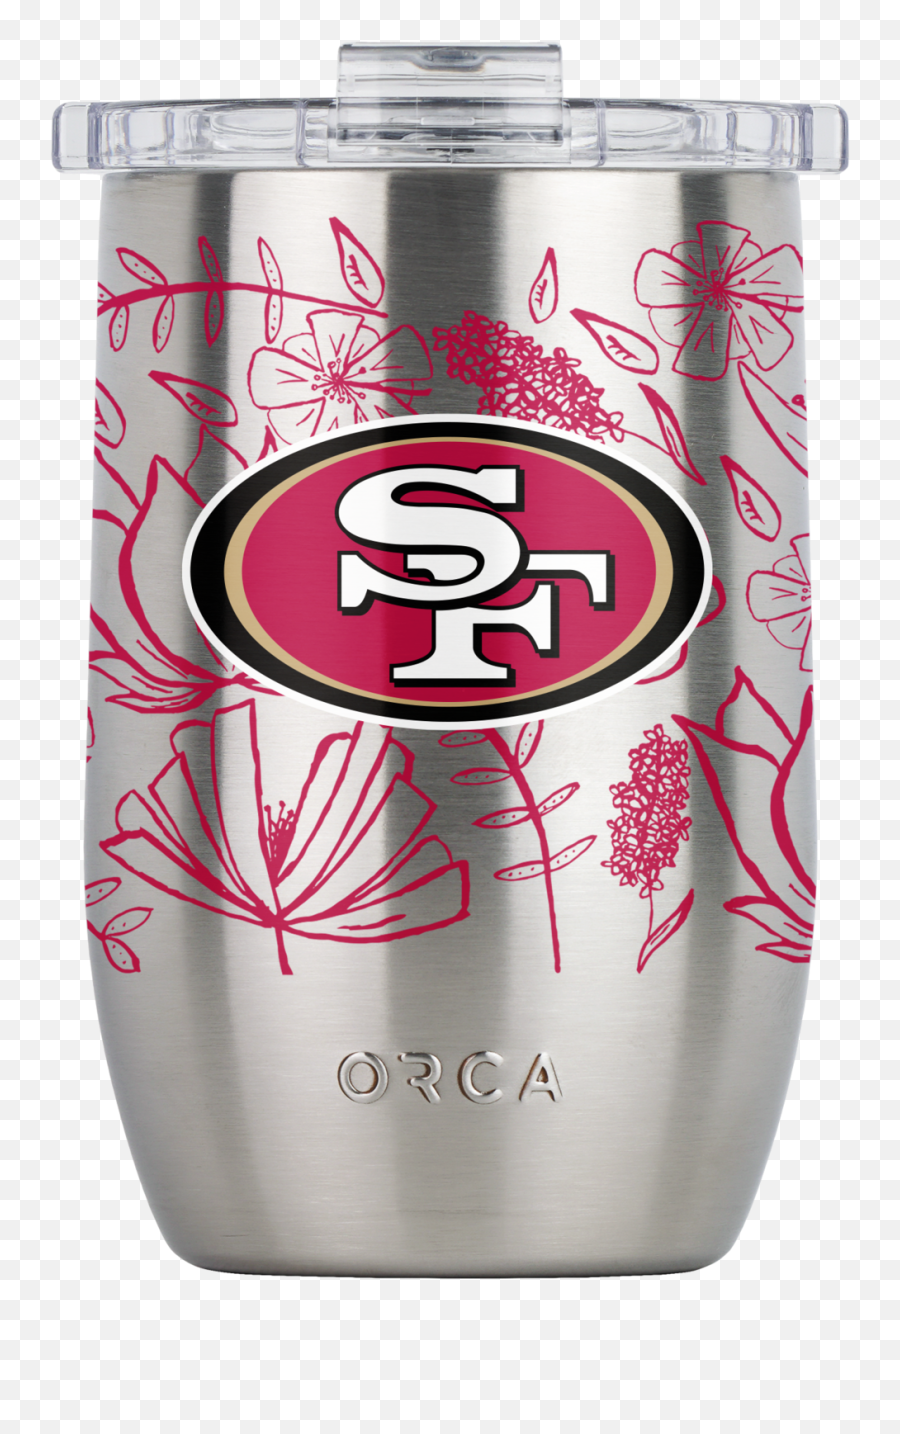 49ers - Orca San Francisco 49ers Emoji,49er Logo